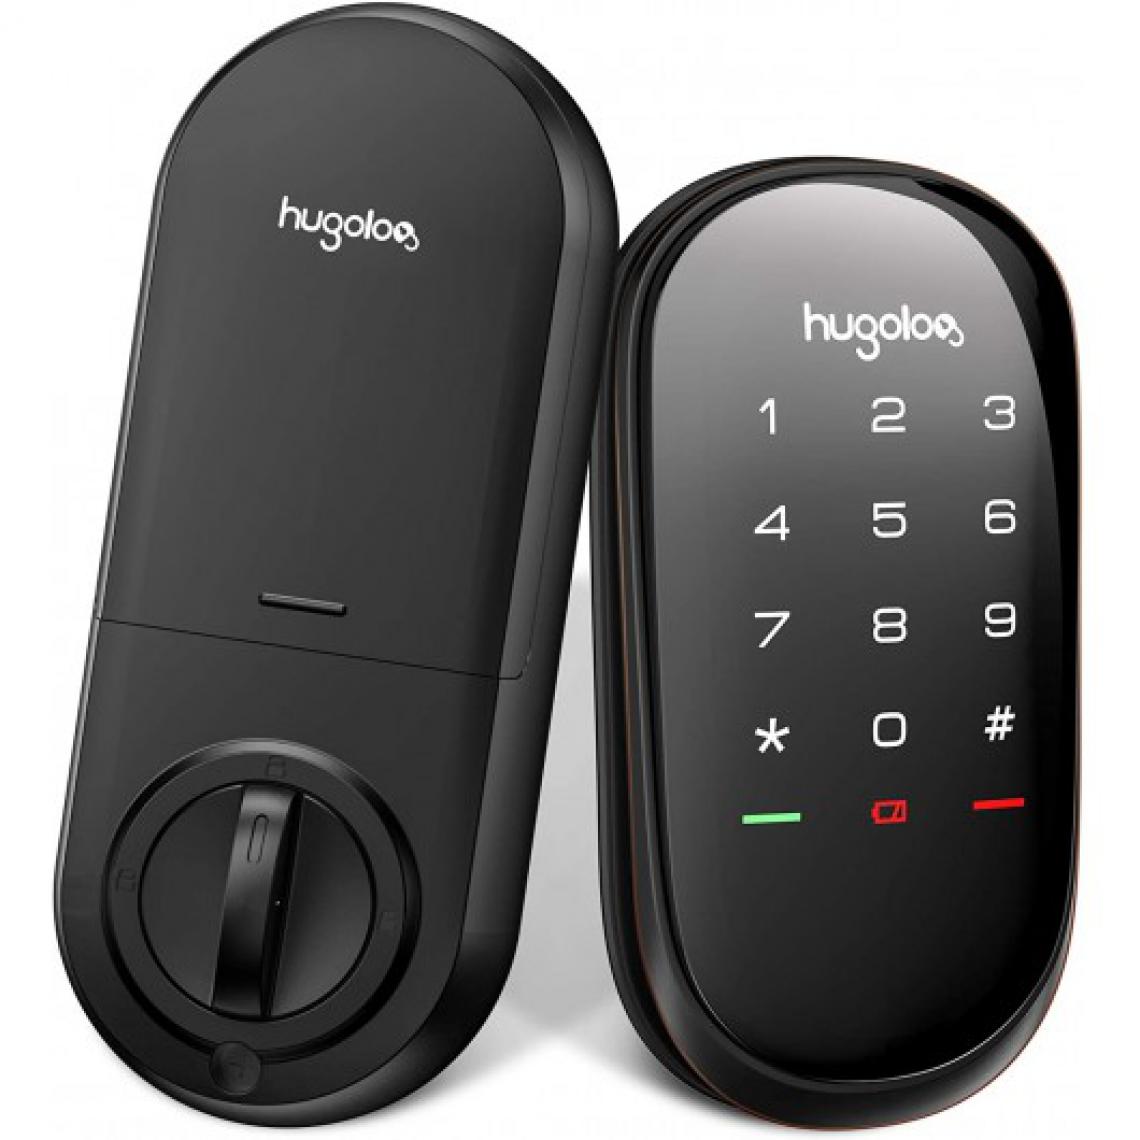 Hugolog - Hugolog HU04, votre porte d'entree connectee - Accessoires sécurité connectée